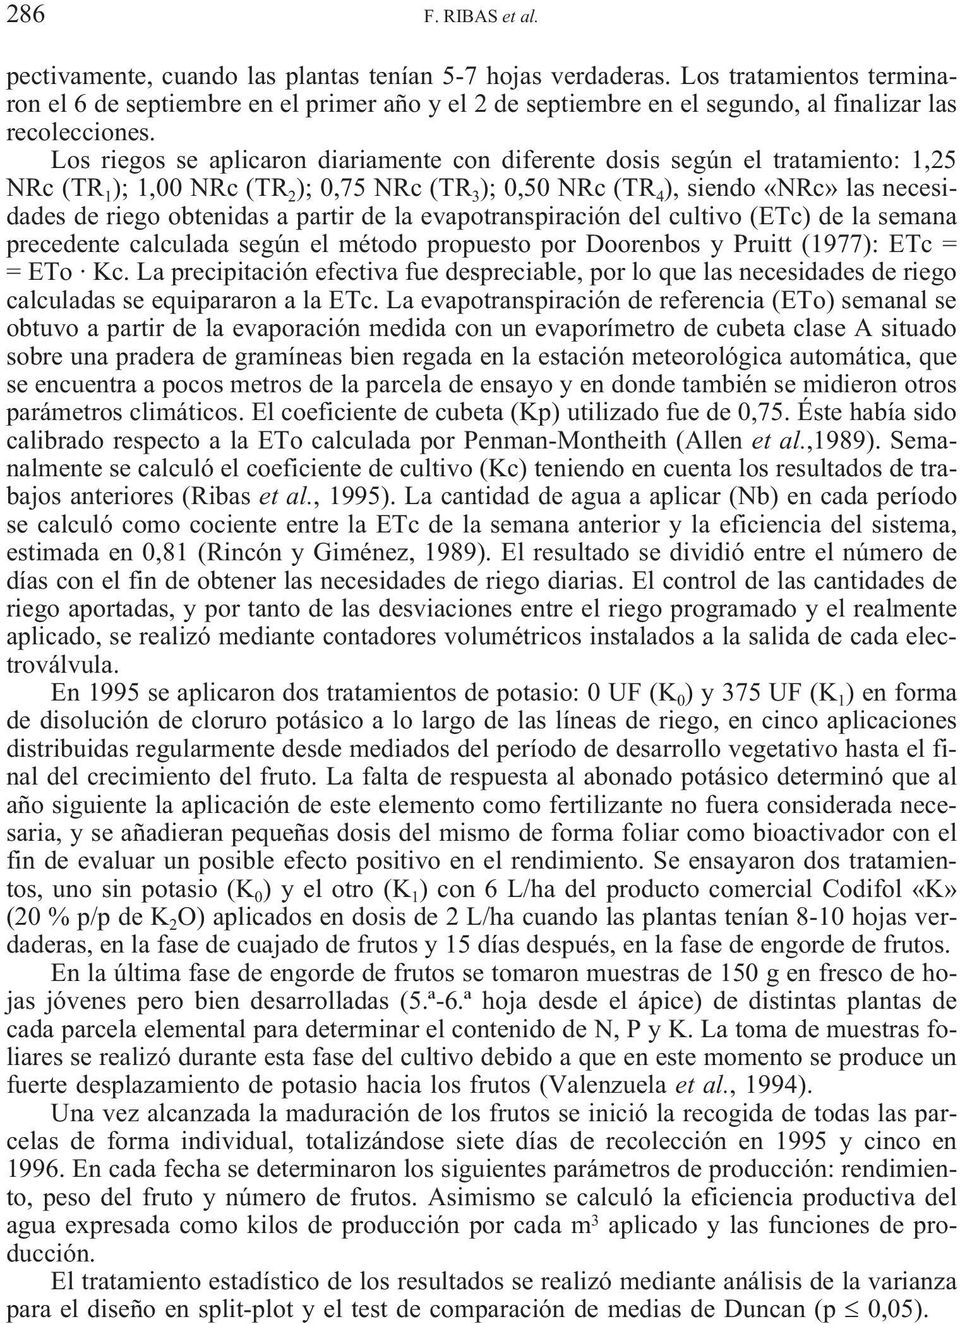 evpotrnspirción del cultivo (ETc) de l semn precedente clculd según el método propuesto por Doorenos y Pruitt (1977): ETc = = ETo Kc.